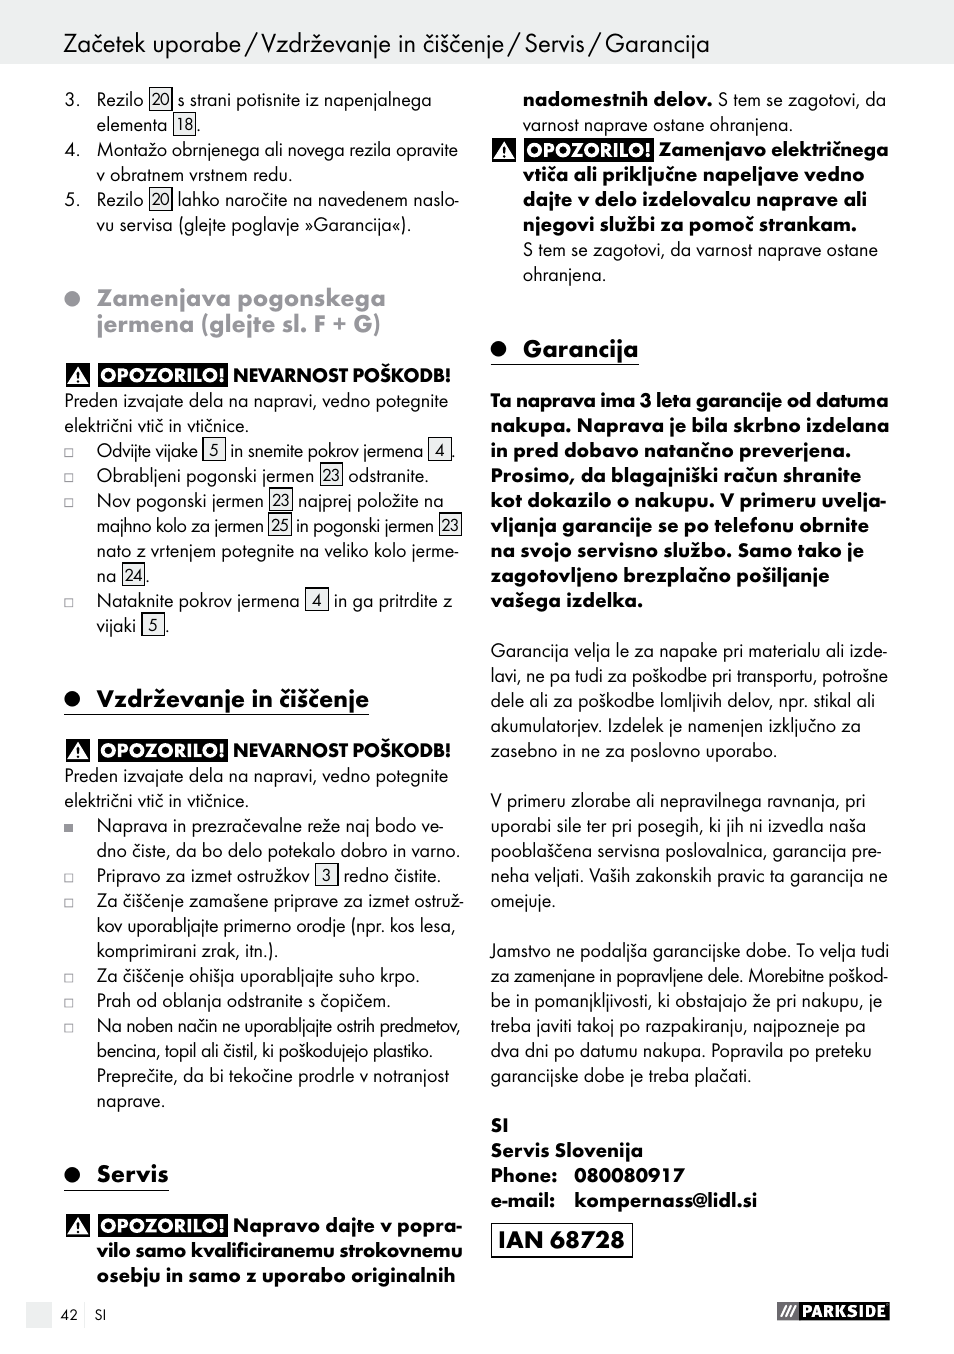 Zamenjava pogonskega jermena (glejte sl. f + g), Vzdrževanje in čiščenje,  Servis | Parkside PEH 30 A1 User Manual | Page 42 / 75 | Original mode